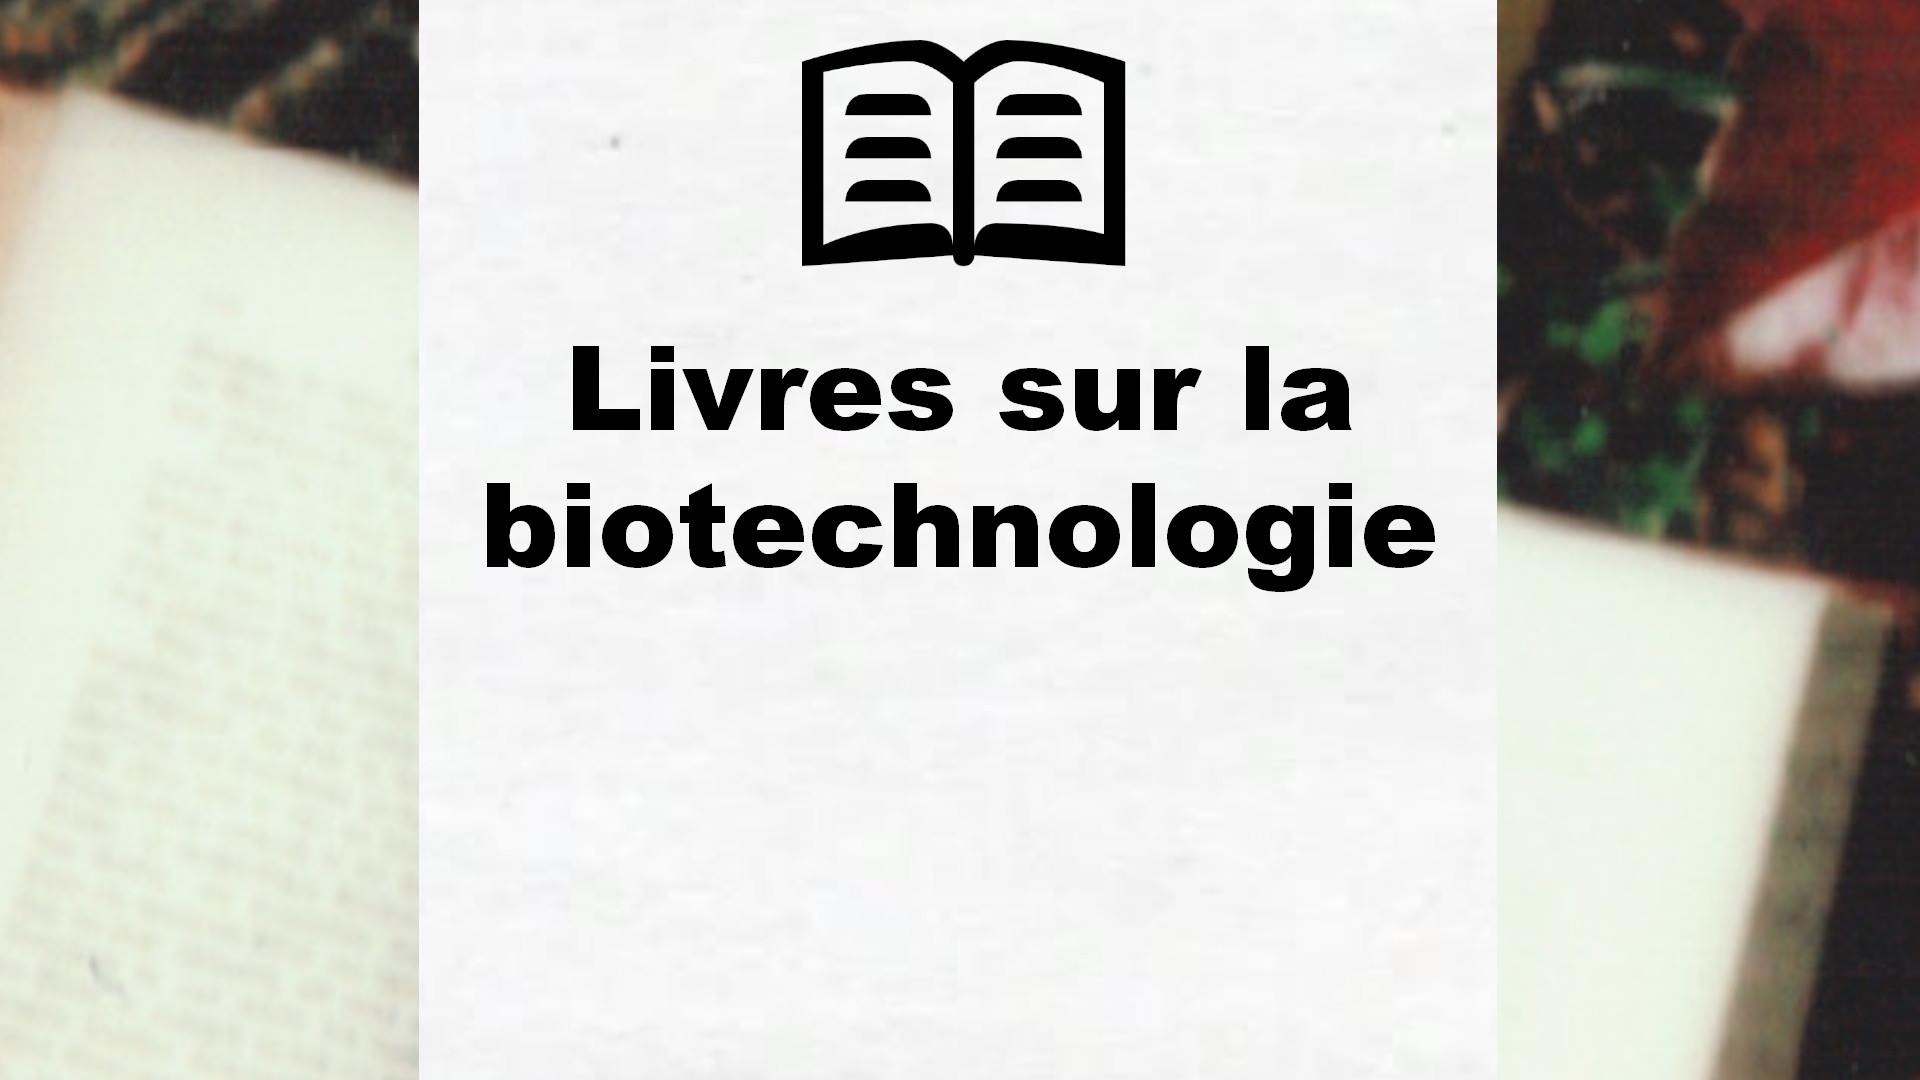 Livres sur la biotechnologie